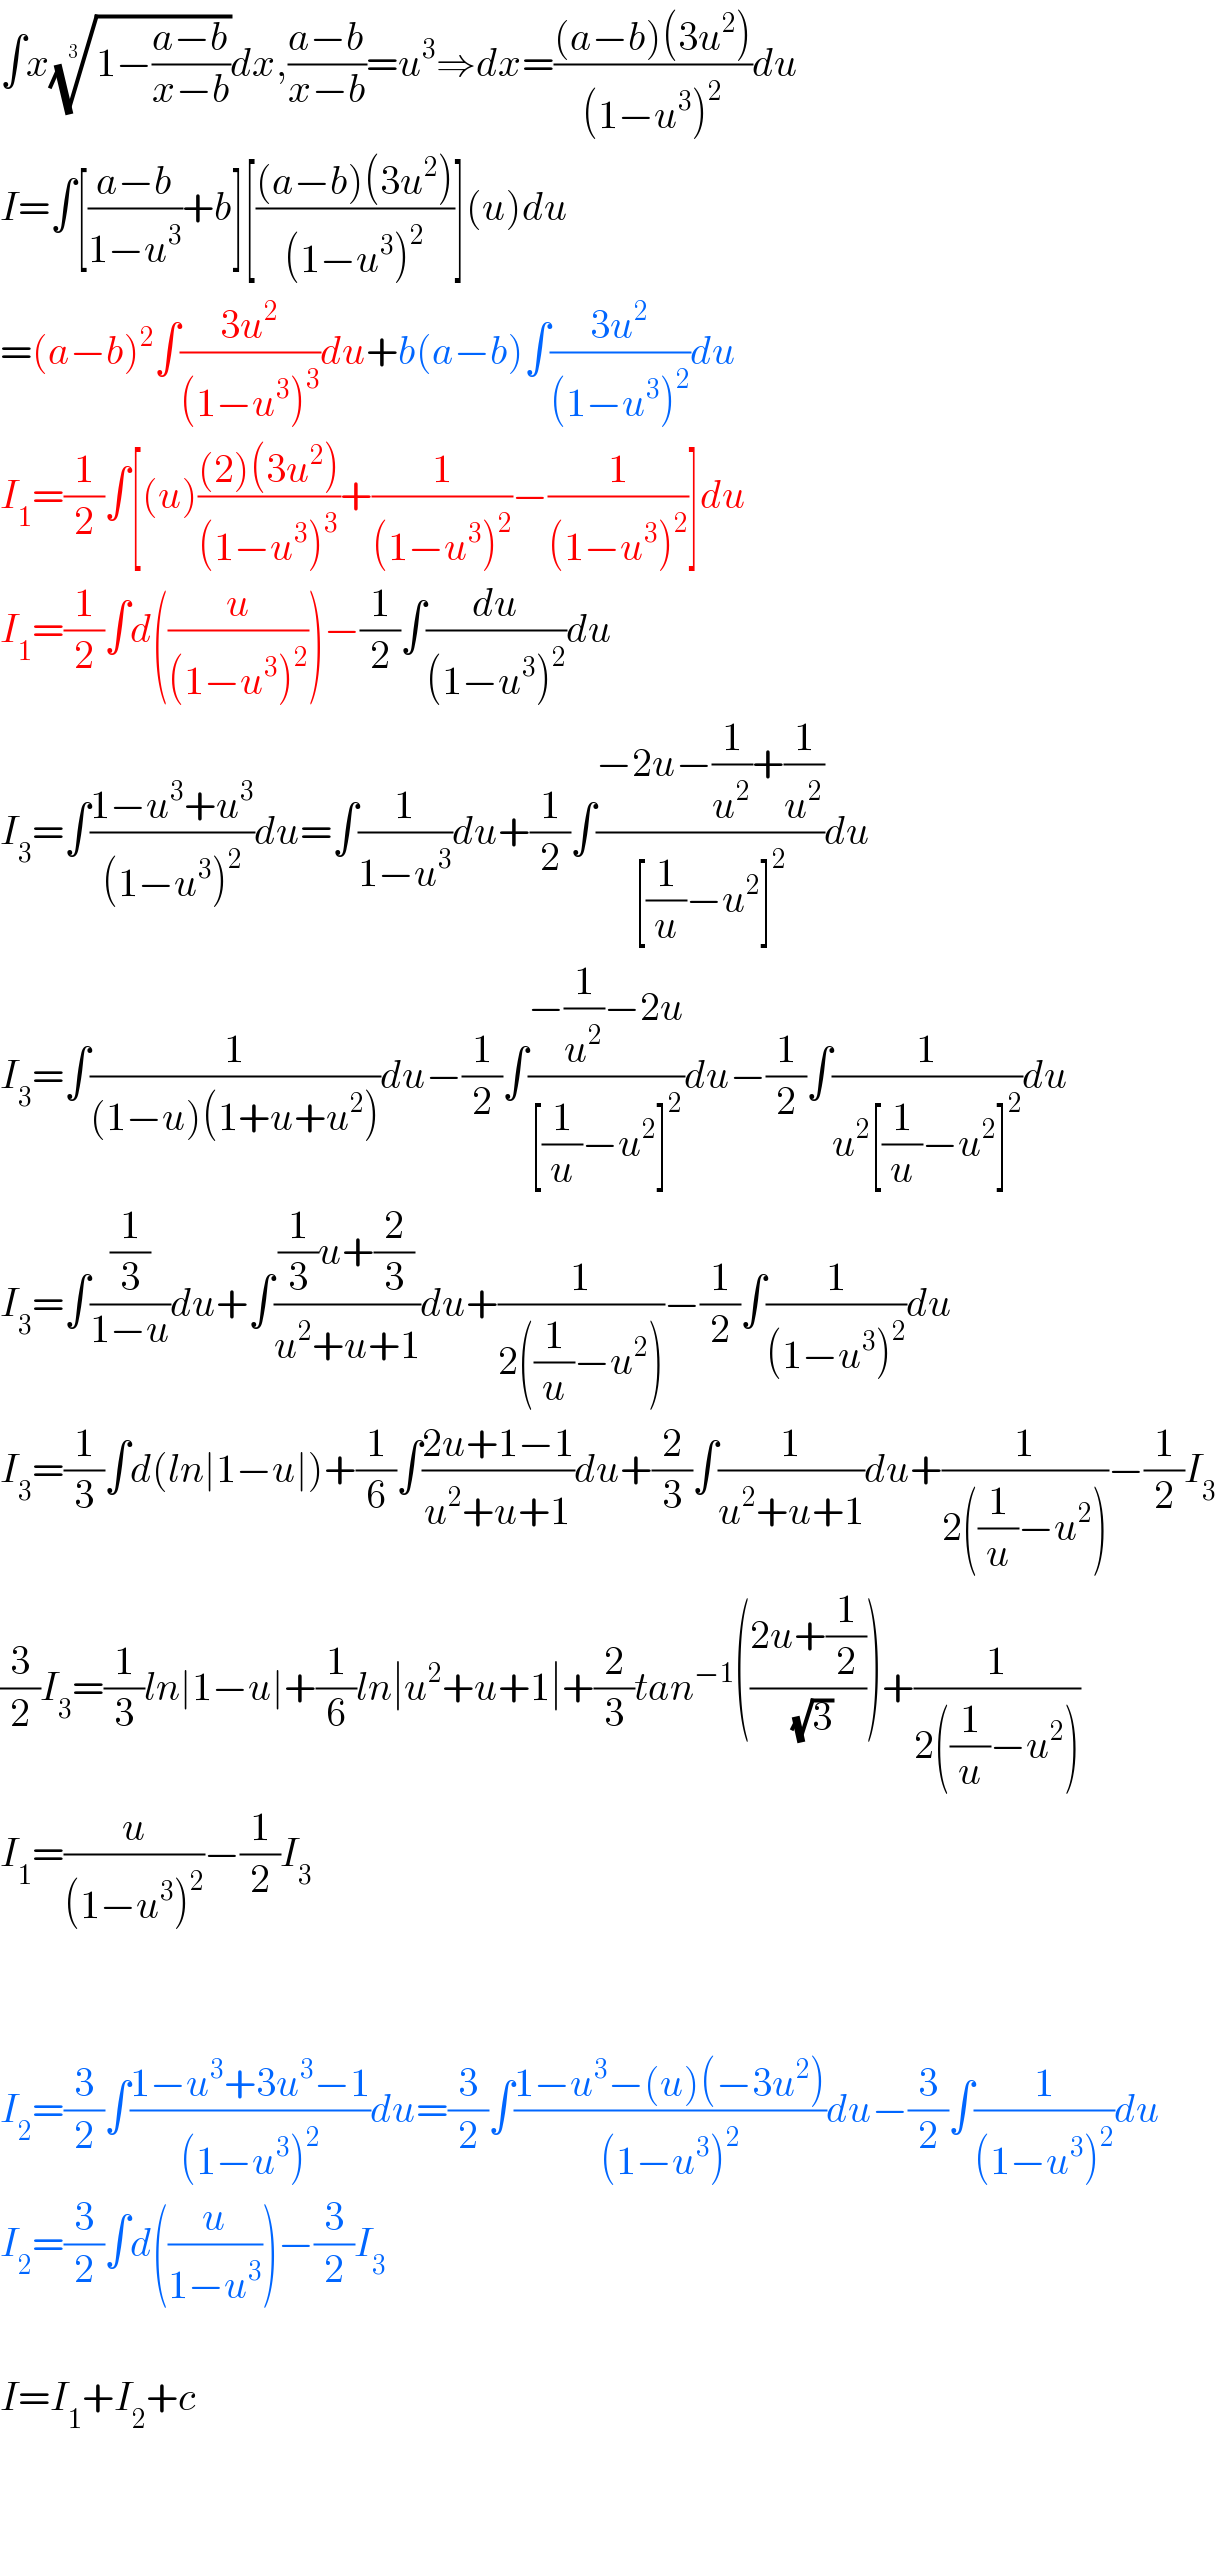 ∫x((1−((a−b)/(x−b))))^(1/3) dx,((a−b)/(x−b))=u^3 ⇒dx=(((a−b)(3u^2 ))/((1−u^3 )^2 ))du  I=∫[((a−b)/(1−u^3 ))+b][(((a−b)(3u^2 ))/((1−u^3 )^2 ))](u)du  =(a−b)^2 ∫((3u^2 )/((1−u^3 )^3 ))du+b(a−b)∫((3u^2 )/((1−u^3 )^2 ))du  I_1 =(1/2)∫[(u)(((2)(3u^2 ))/((1−u^3 )^3 ))+(1/((1−u^3 )^2 ))−(1/((1−u^3 )^2 ))]du  I_1 =(1/2)∫d((u/((1−u^3 )^2 )))−(1/2)∫(du/((1−u^3 )^2 ))du  I_3 =∫((1−u^3 +u^3 )/((1−u^3 )^2 ))du=∫(1/(1−u^3 ))du+(1/2)∫((−2u−(1/u^2 )+(1/u^2 ))/([(1/u)−u^2 ]^2 ))du  I_3 =∫(1/((1−u)(1+u+u^2 )))du−(1/2)∫((−(1/u^2 )−2u)/([(1/u)−u^2 ]^2 ))du−(1/2)∫(1/(u^2 [(1/u)−u^2 ]^2 ))du  I_3 =∫((1/3)/(1−u))du+∫(((1/3)u+(2/3))/(u^2 +u+1))du+(1/(2((1/u)−u^2 )))−(1/2)∫(1/((1−u^3 )^2 ))du  I_3 =(1/3)∫d(ln∣1−u∣)+(1/6)∫((2u+1−1)/(u^2 +u+1))du+(2/3)∫(1/(u^2 +u+1))du+(1/(2((1/u)−u^2 )))−(1/2)I_3   (3/2)I_3 =(1/3)ln∣1−u∣+(1/6)ln∣u^2 +u+1∣+(2/3)tan^(−1) (((2u+(1/2))/(√3)))+(1/(2((1/u)−u^2 )))  I_1 =(u/((1−u^3 )^2 ))−(1/2)I_3       I_2 =(3/2)∫((1−u^3 +3u^3 −1)/((1−u^3 )^2 ))du=(3/2)∫((1−u^3 −(u)(−3u^2 ))/((1−u^3 )^2 ))du−(3/2)∫(1/((1−u^3 )^2 ))du  I_2 =(3/2)∫d((u/(1−u^3 )))−(3/2)I_3     I=I_1 +I_2 +c      